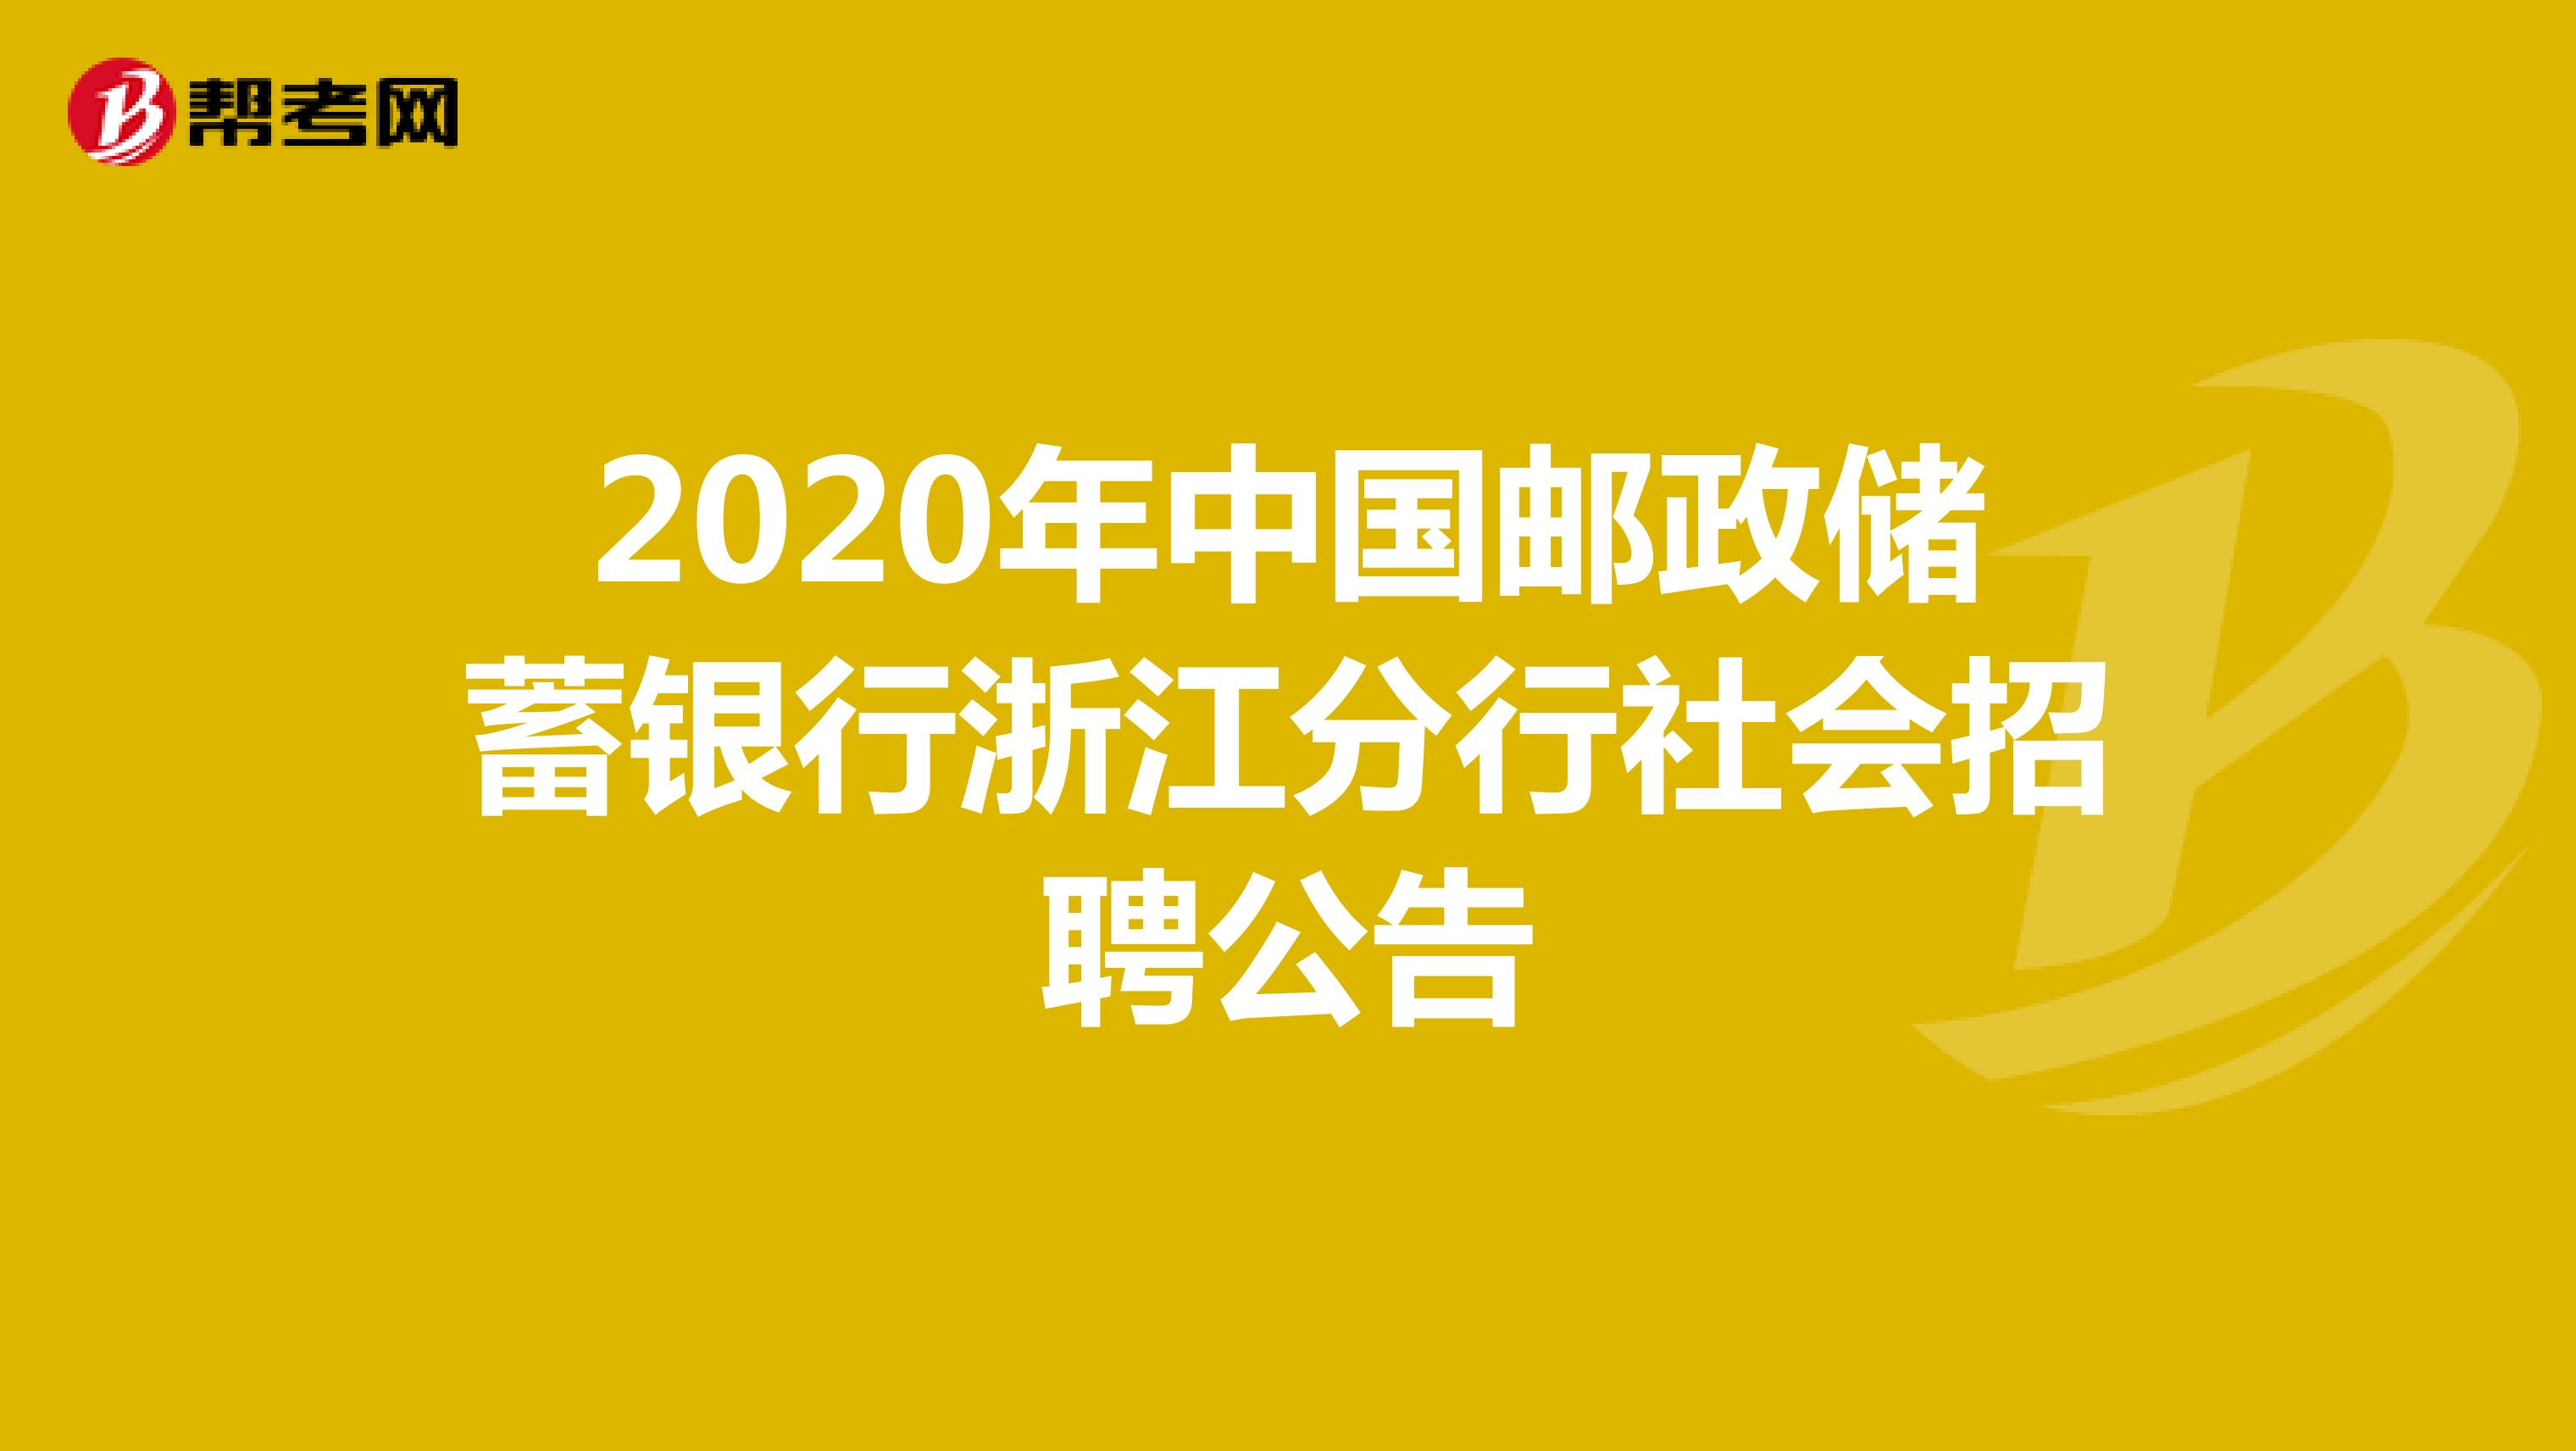 2020年中国邮政储蓄银行浙江分行社会招聘公告